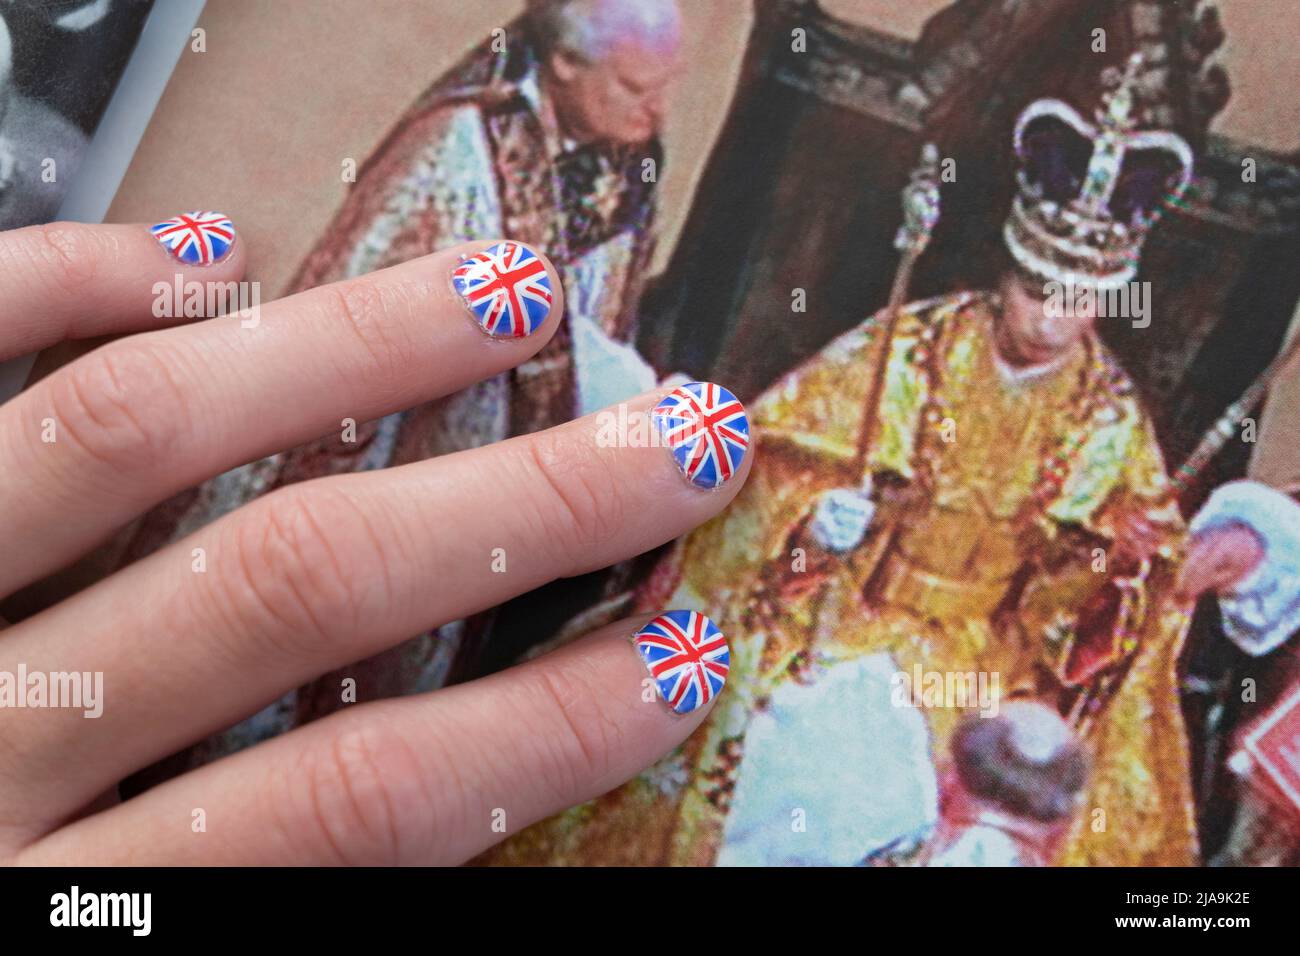 Frau mit Fingernägeln, gemalt mit der britischen Flagge, die auf dem OK-Magazin ruht, mit einem Bild aus der Krönung der Königin. Platinum Jubilee Juni 2022 Stockfoto